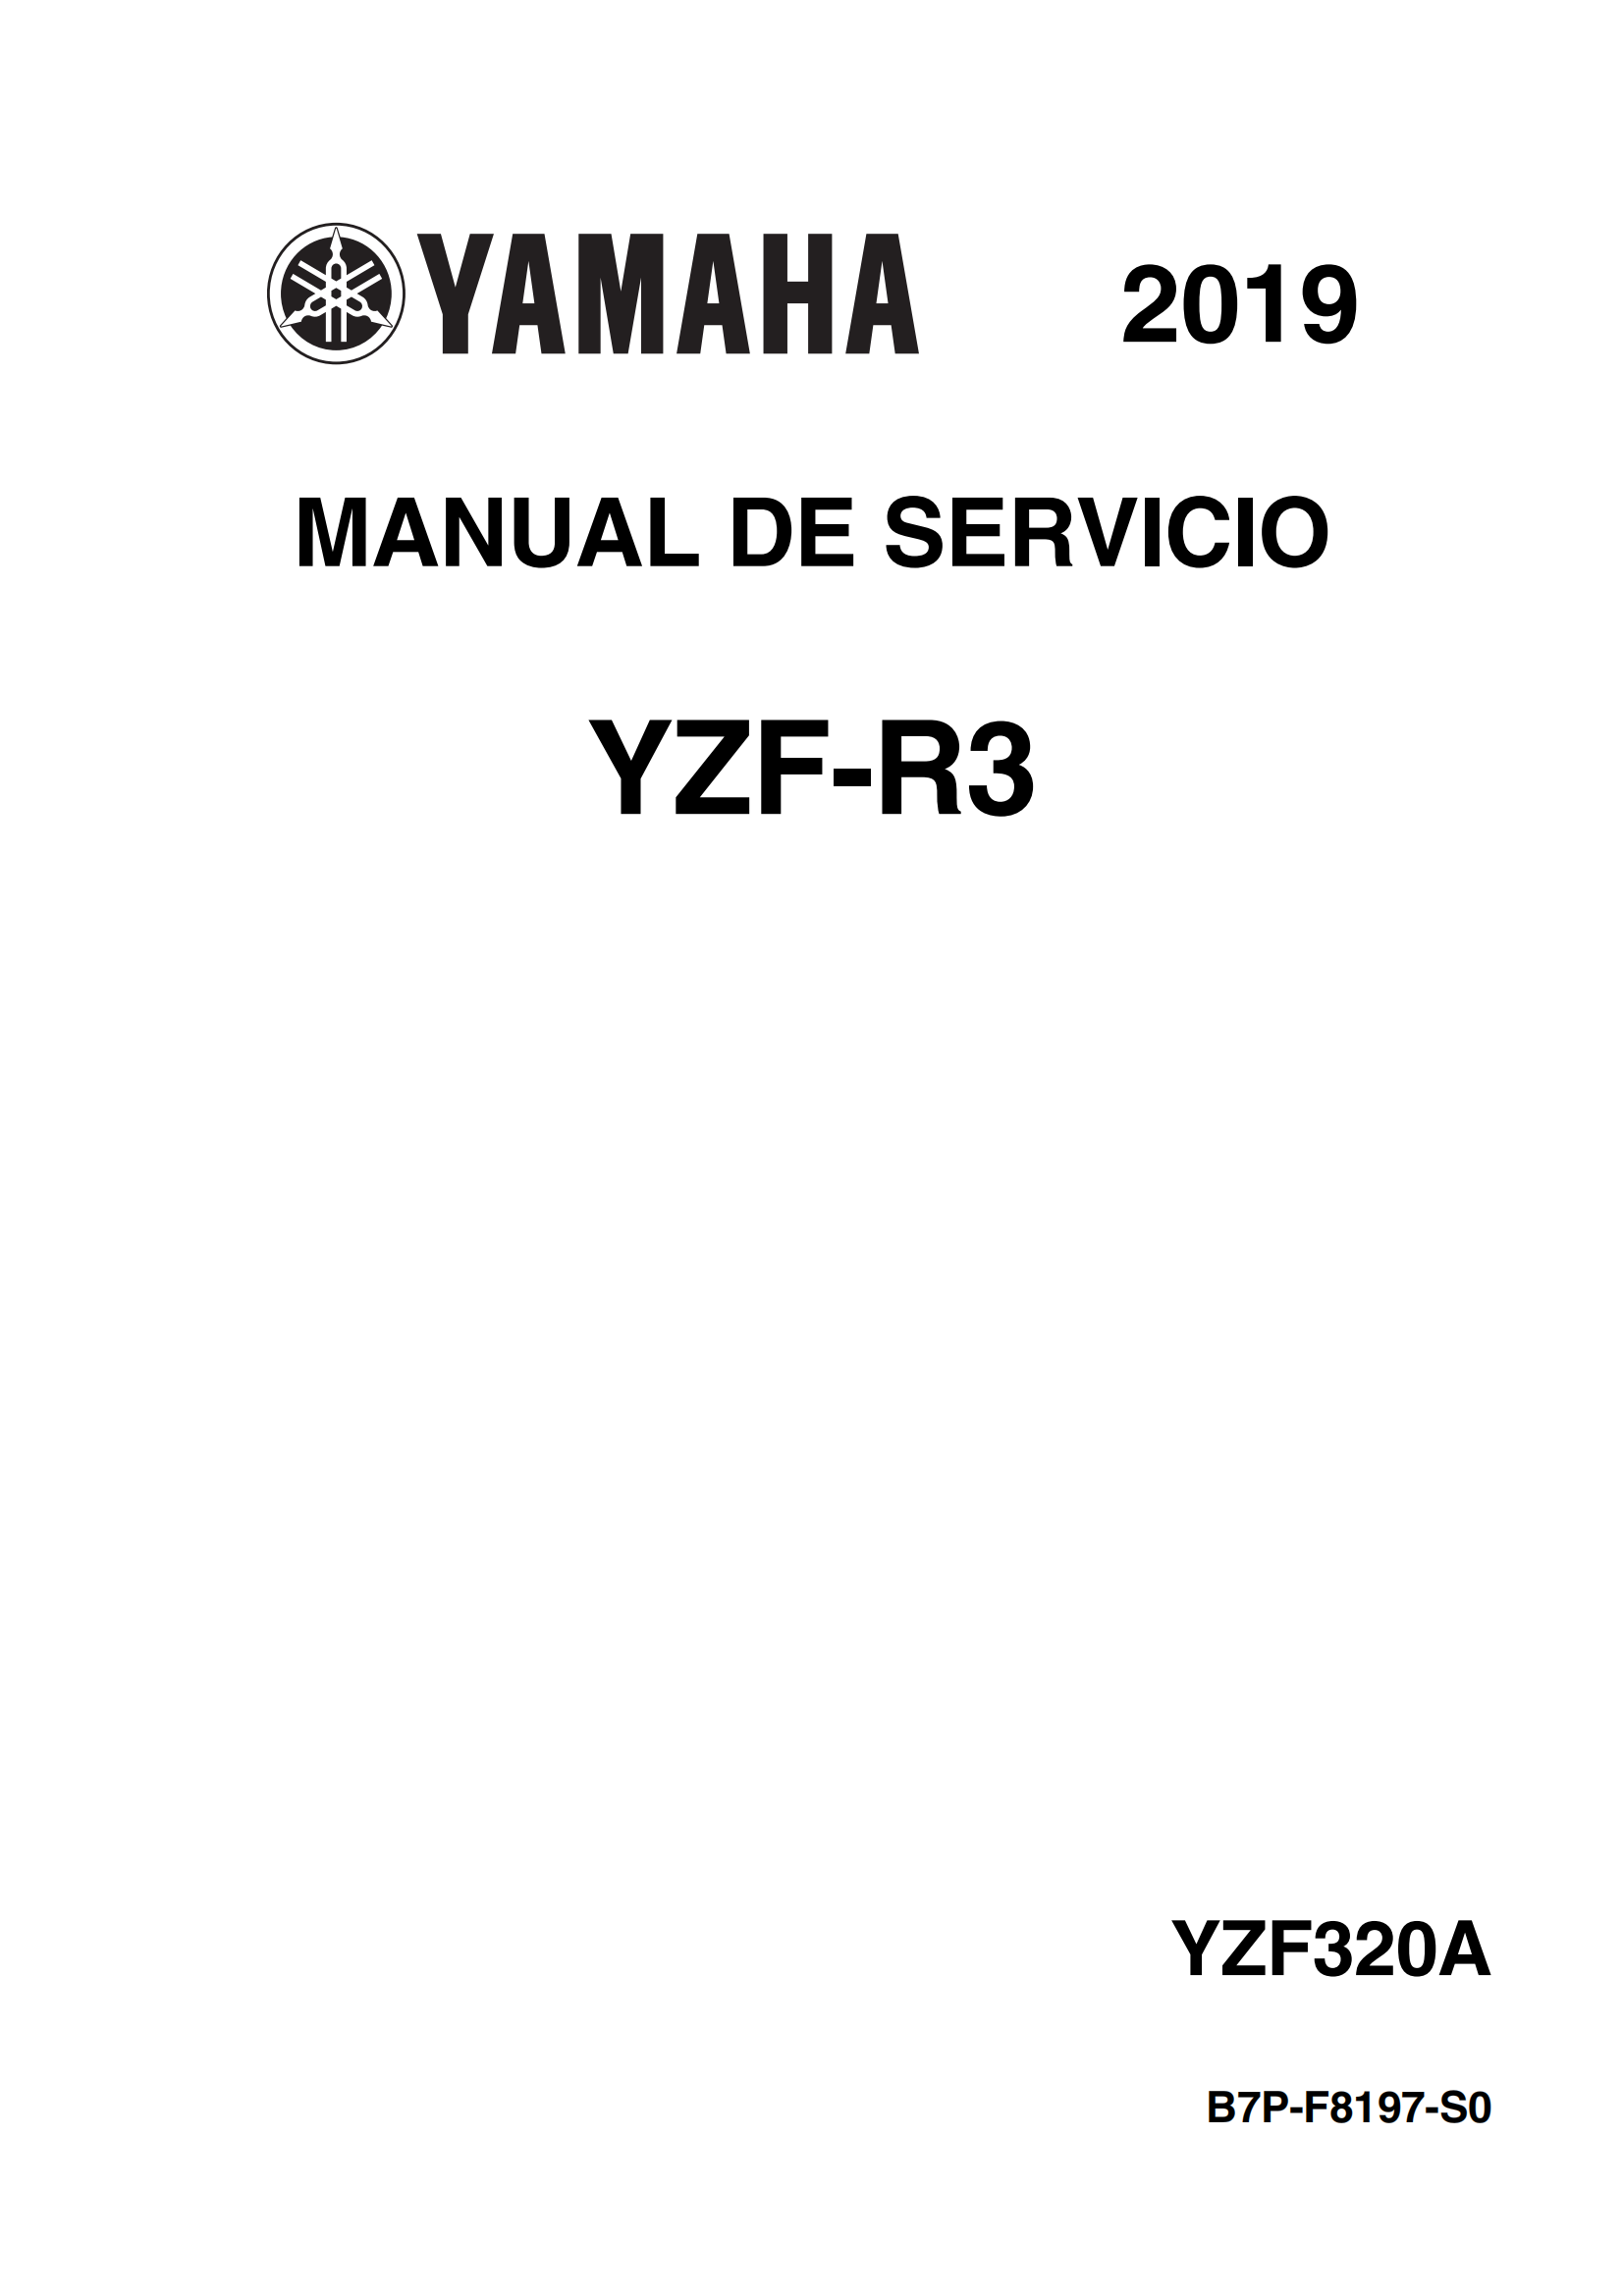 原版西班牙语2019-2021年雅马哈r3维修手册雅马哈yzfr3 yamaha yzf-r3维修手册插图